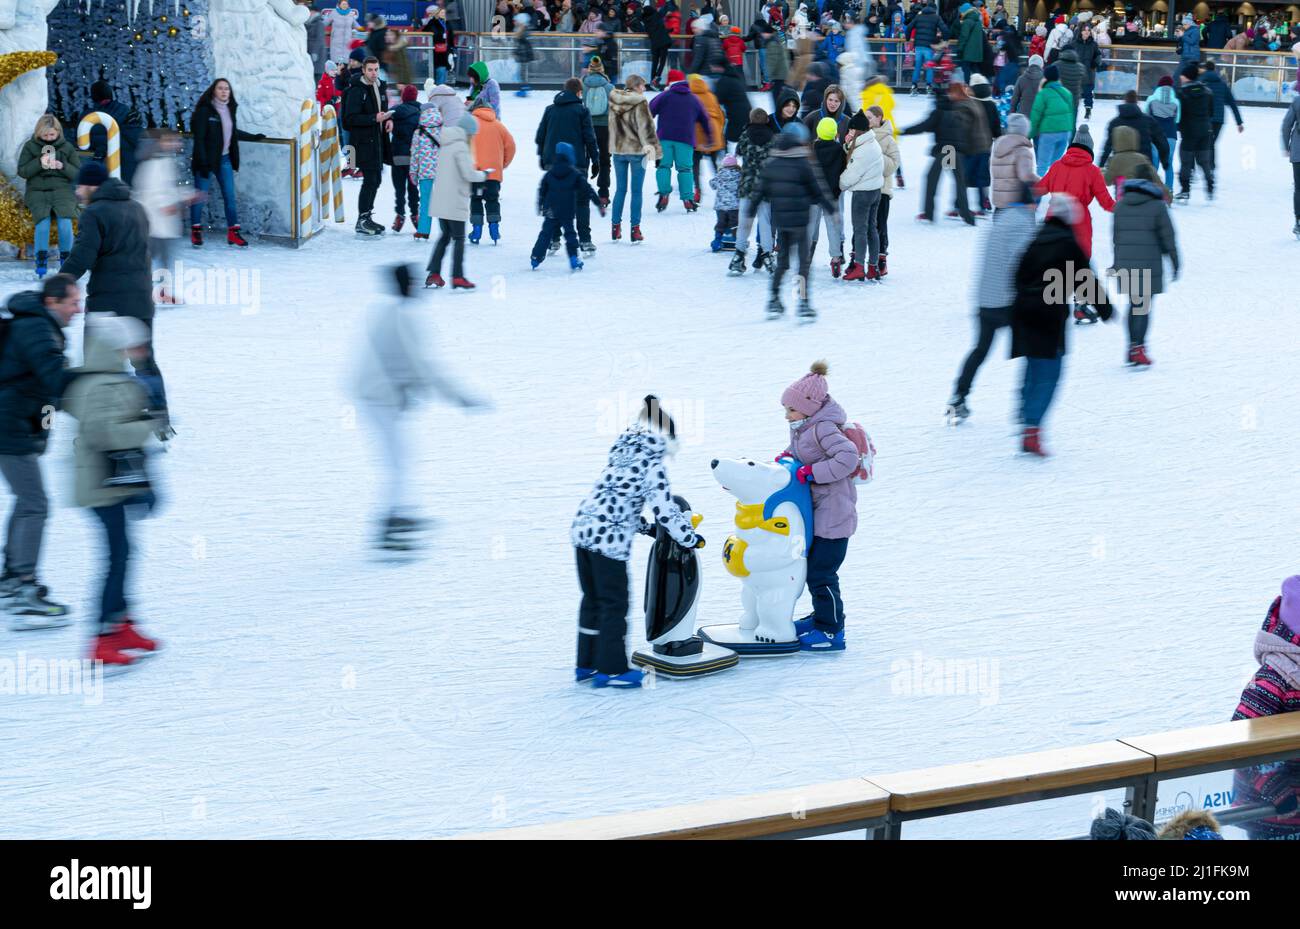 Ucrania, Kiev - 7 de enero de 2022: Pista de patinaje sobre hielo en invierno. La gente patina. Patinetas en hielo. Patinaje sobre hielo es un entretenimiento de deportes de invierno. Navidad. Fábrica de Roshen árbol de Navidad. Muchedumbre Foto de stock